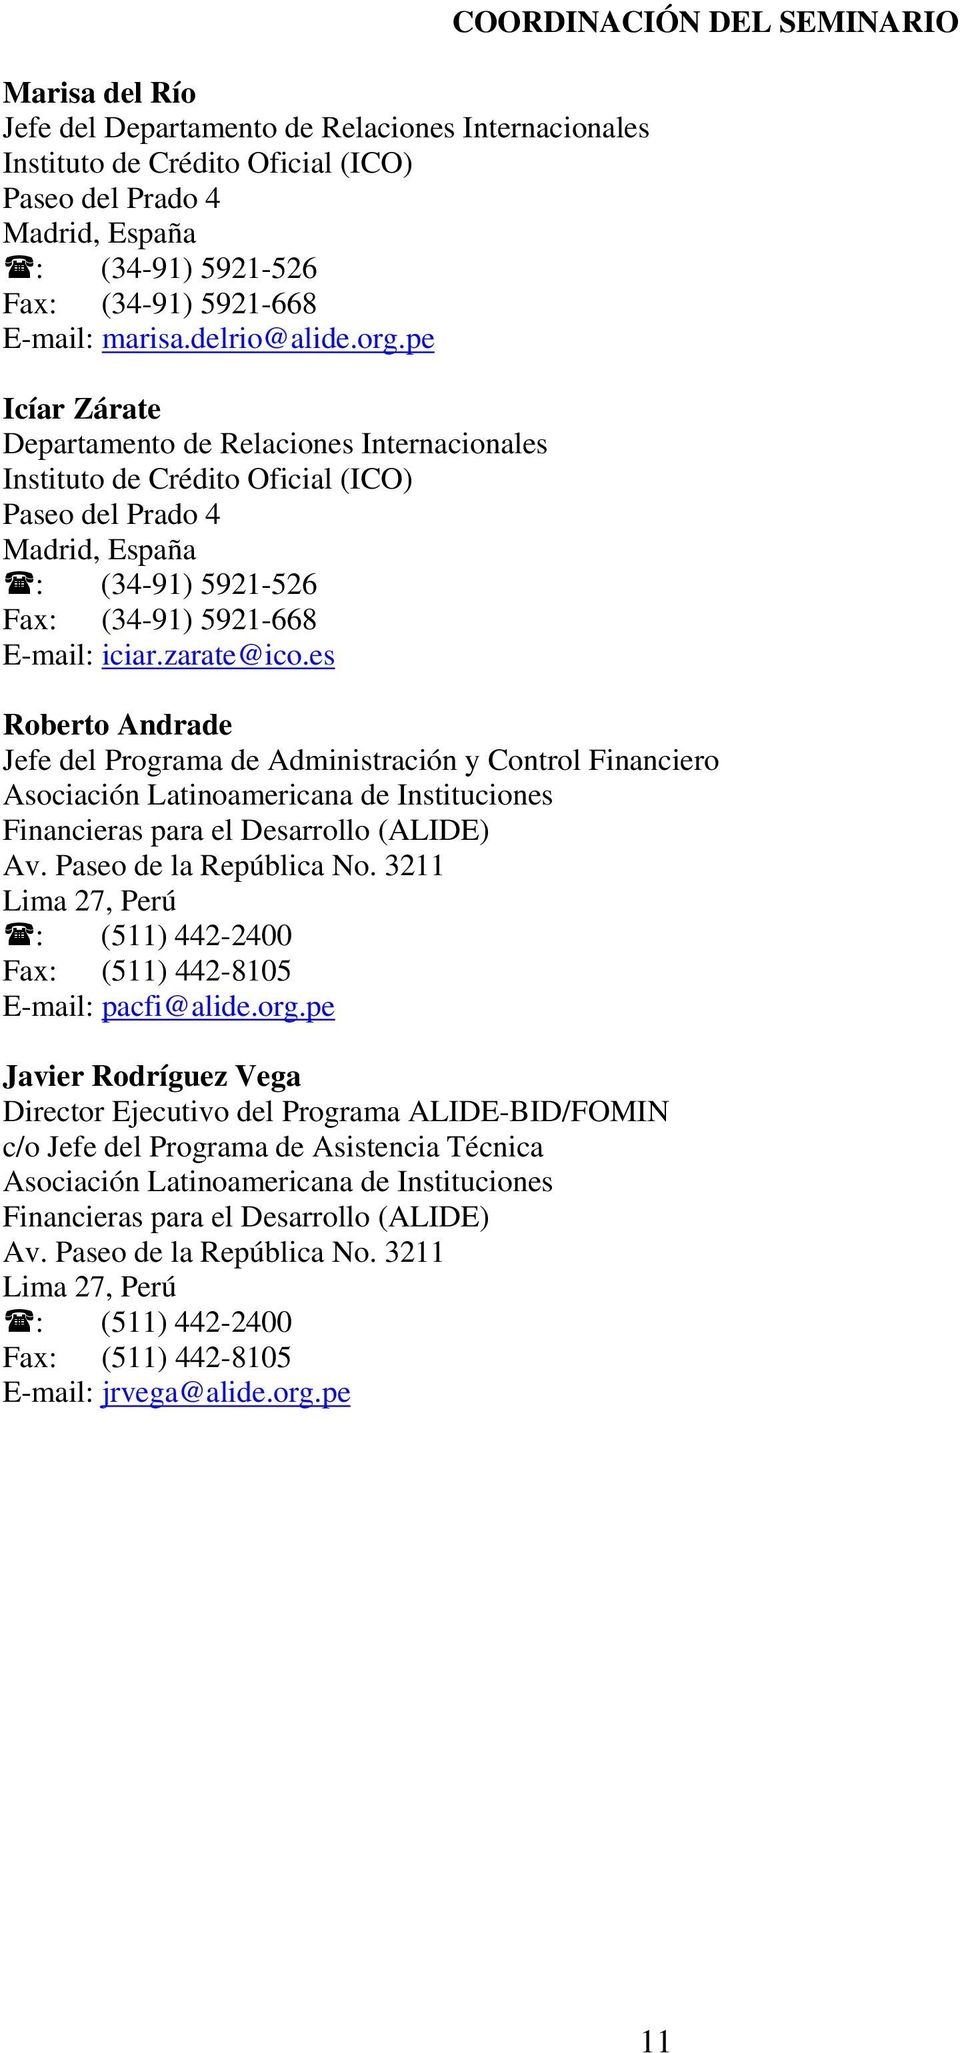 es COORDINACIÓN DEL SEMINARIO Roberto Andrade Jefe del Programa de Administración y Control Financiero Asociación Latinoamericana de Instituciones Financieras para el Desarrollo (ALIDE) Av.